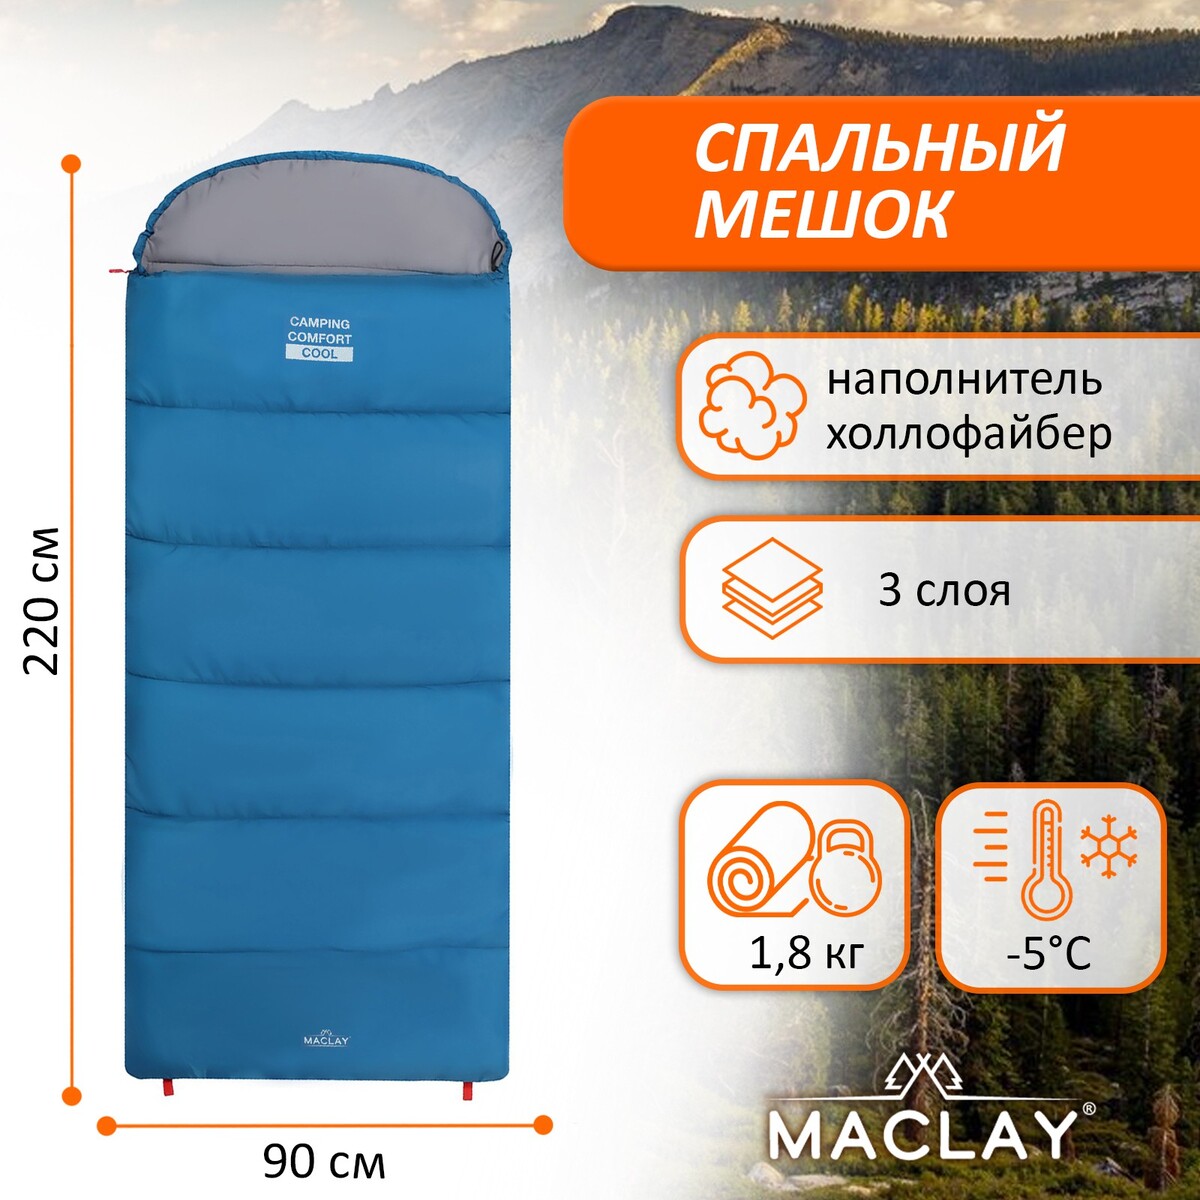 Спальный мешок maclay camping comfort cool, 3-слойный, правый, 220х90 см, -5/+10°с спальник одеяло maclay camping comfort cool 3 слойный правый 220х90 см 5 10°с